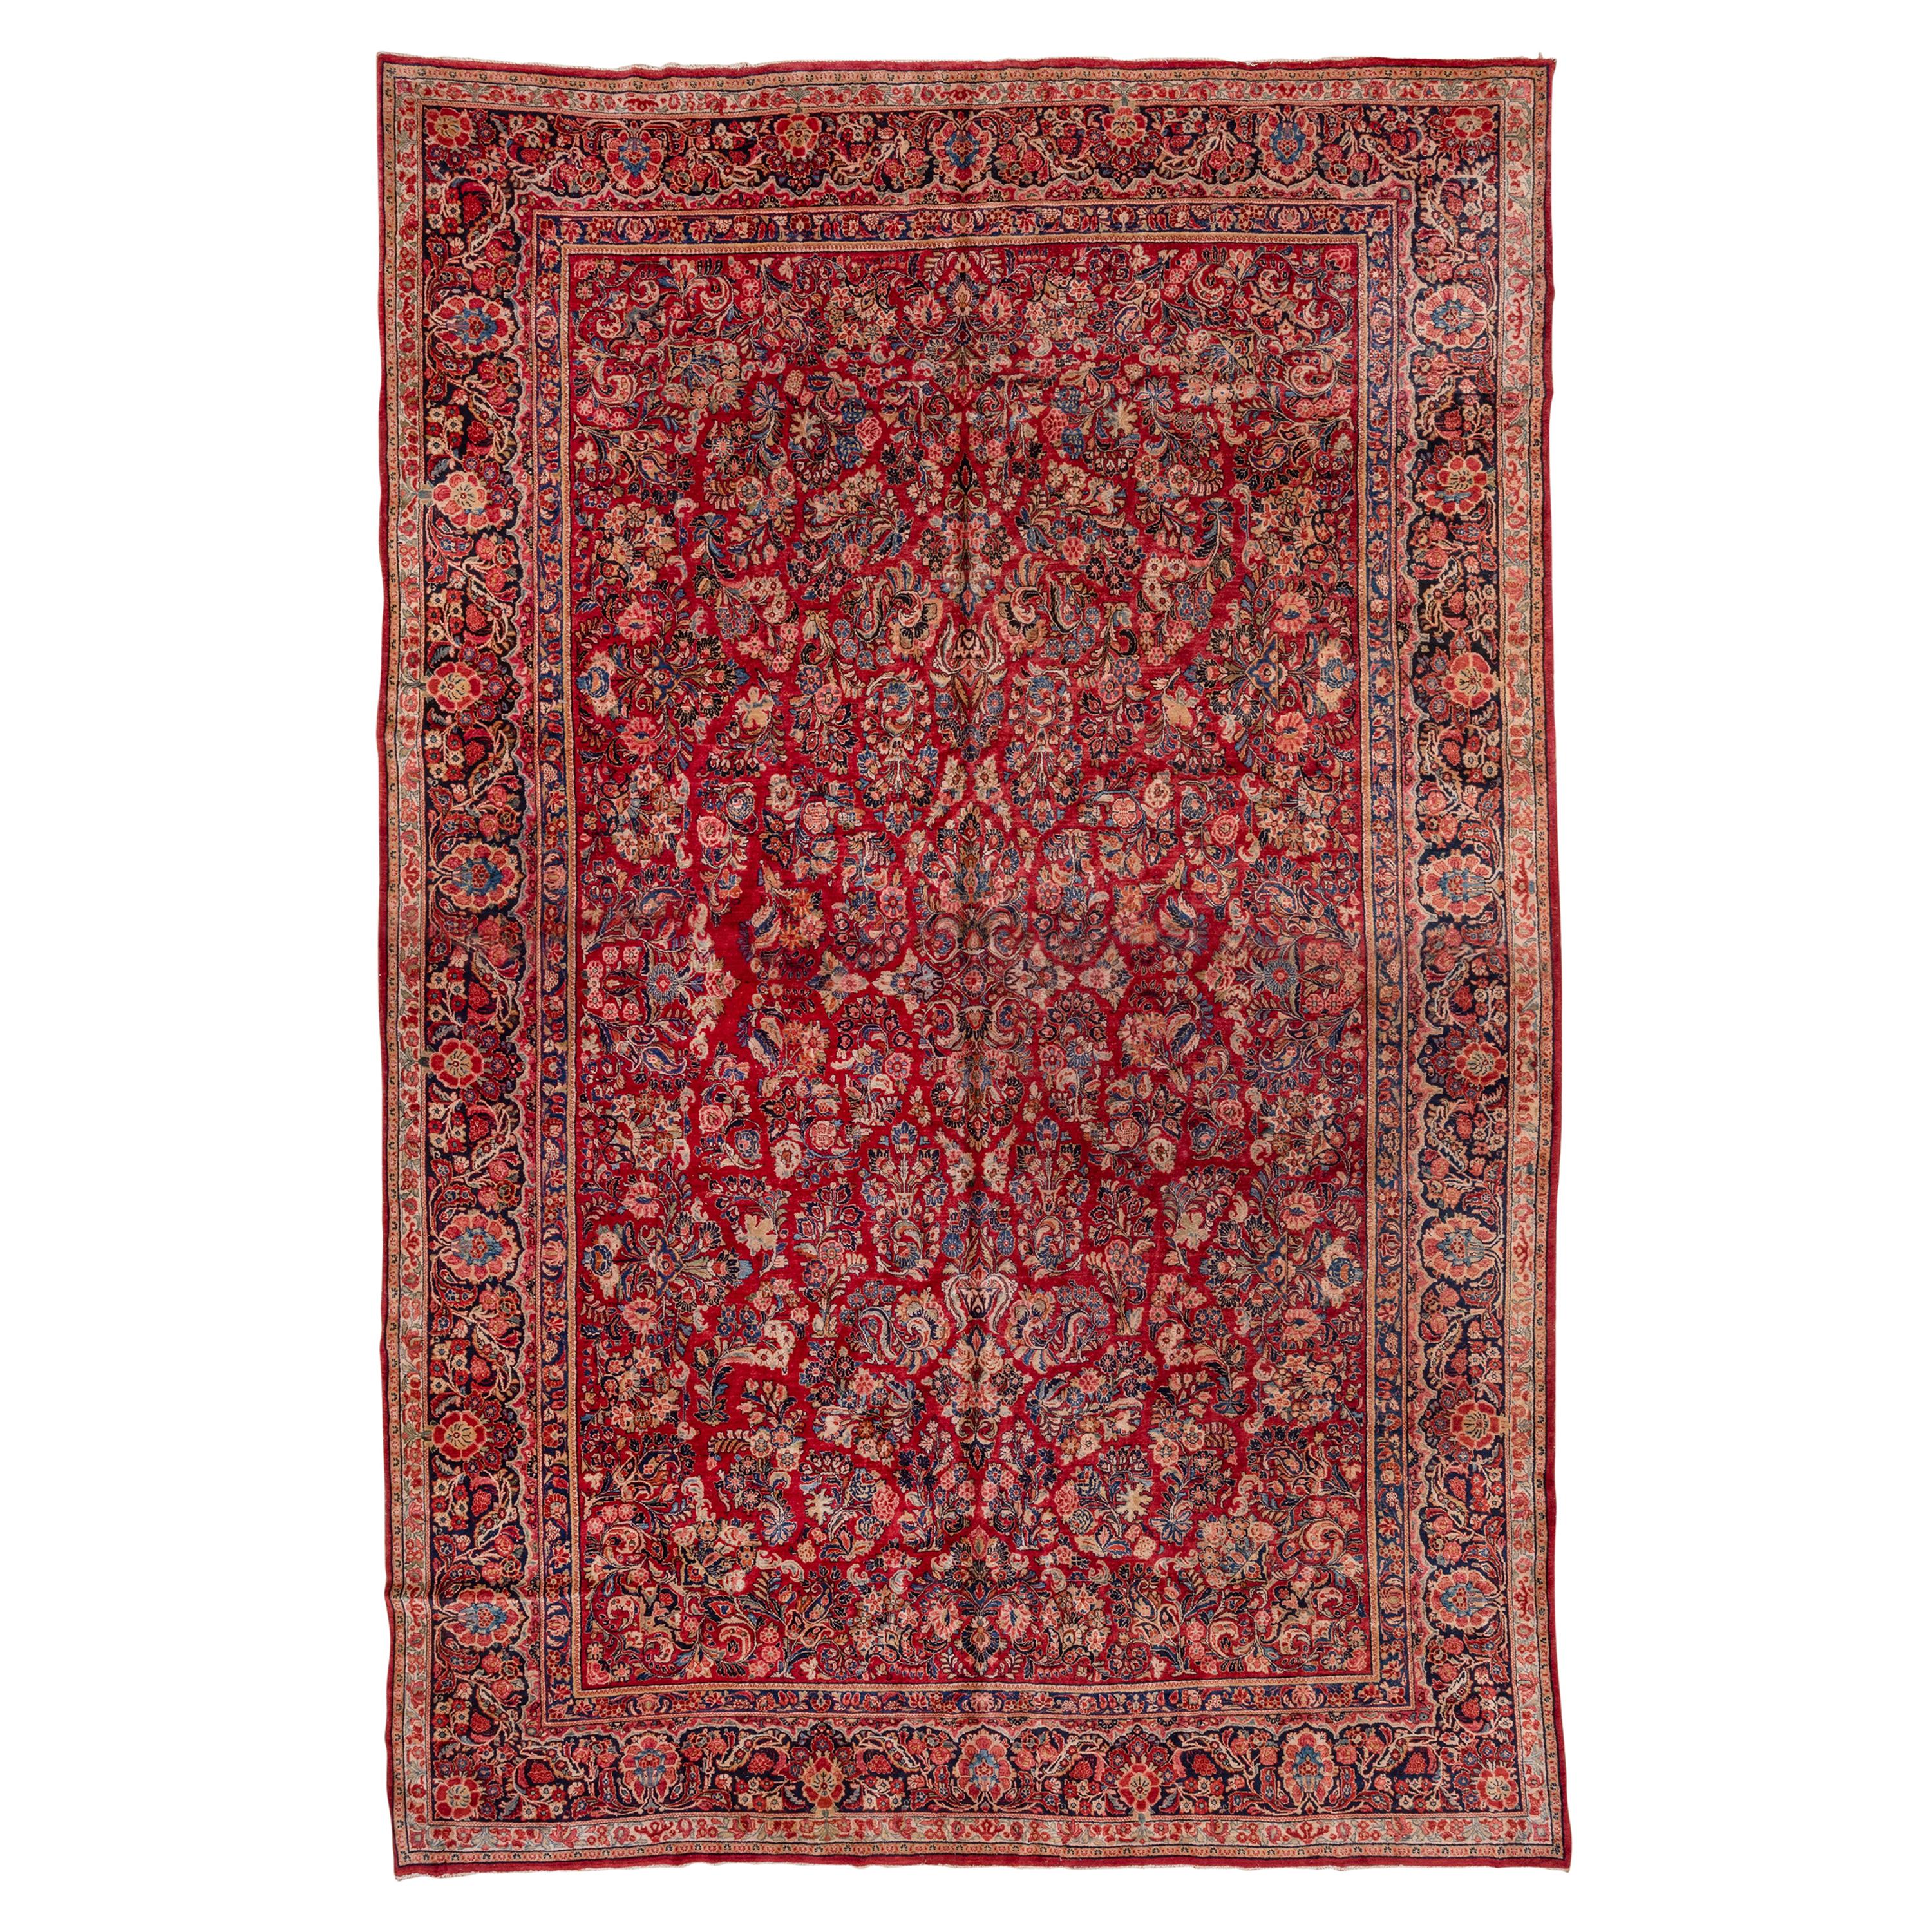 Tapis sarouk persan ancien rouge, tapis à poils longs sur toute sa surface, soie